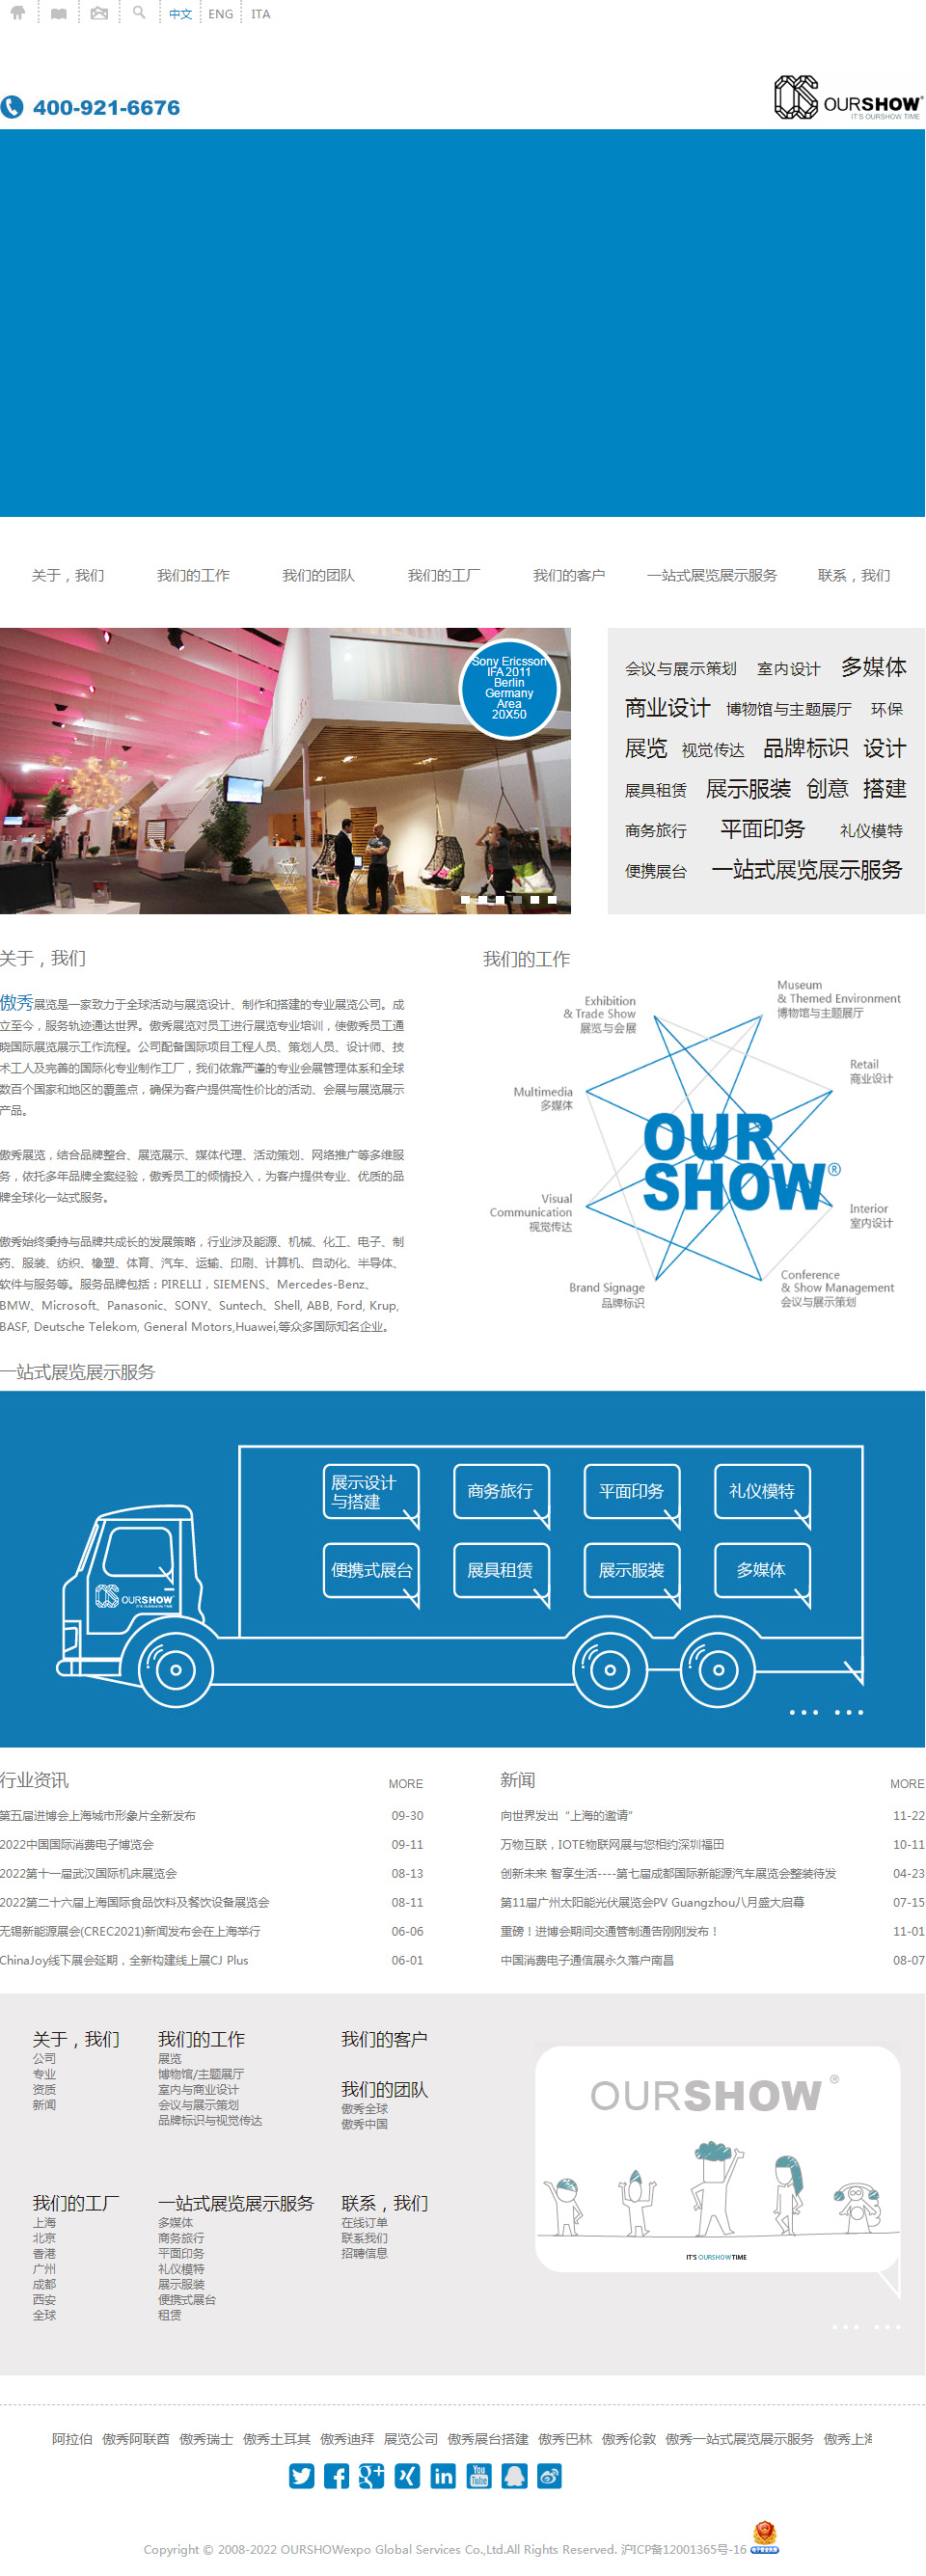 上海傲秀展览展示网站制作首页设计效果图